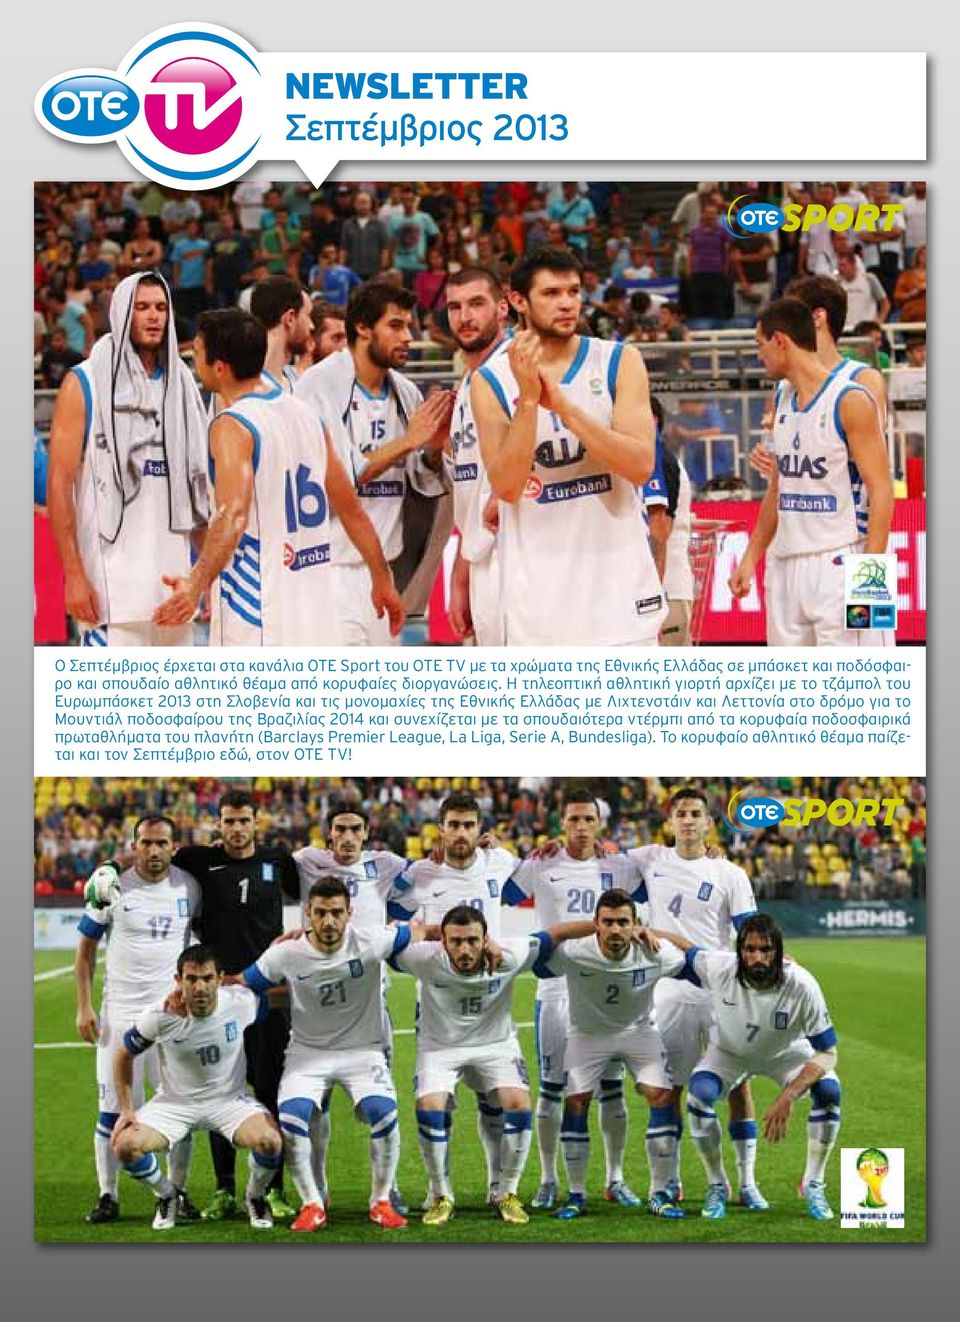 Η τηλεοπτική αθλητική γιορτή αρχίζει με το τζάμπολ του Ευρωμπάσκετ 2013 στη Σλοβενία και τις μονομαχίες της Εθνικής Ελλάδας με Λιχτενστάιν και Λεττονία στο